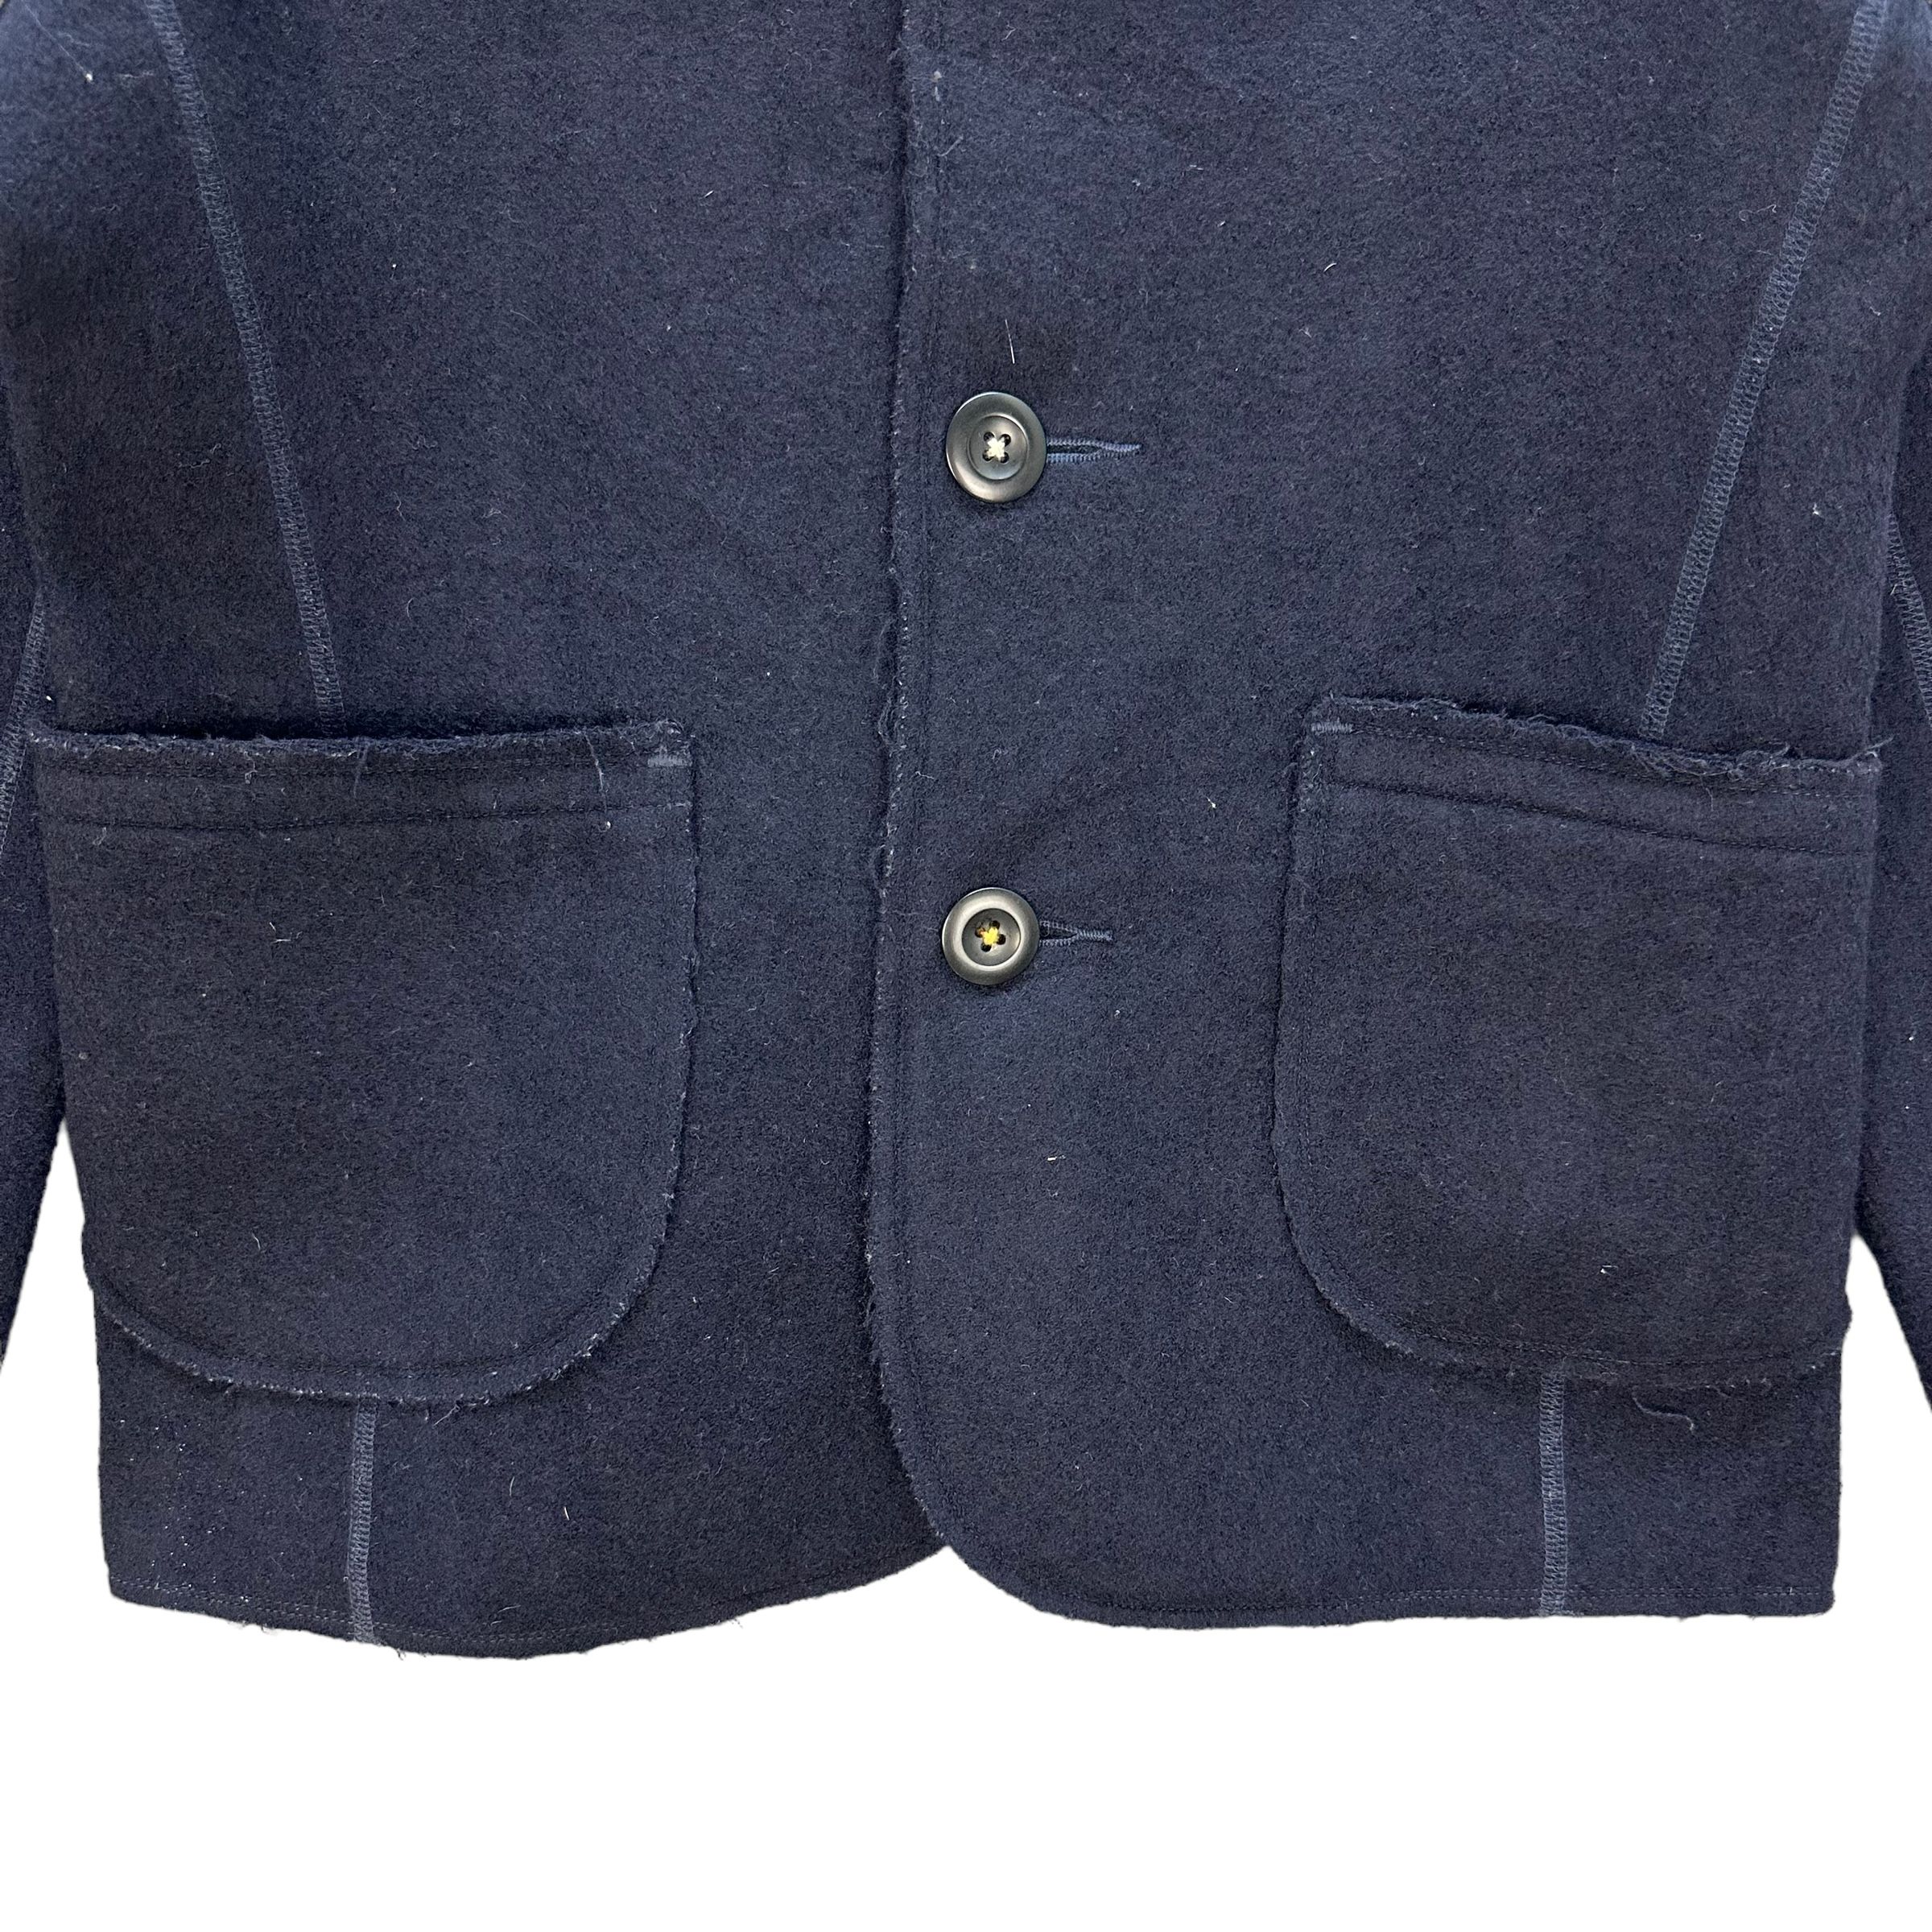 Vintage 45RPM Wool Jacket / Casual Jacket #8900-039 - 3